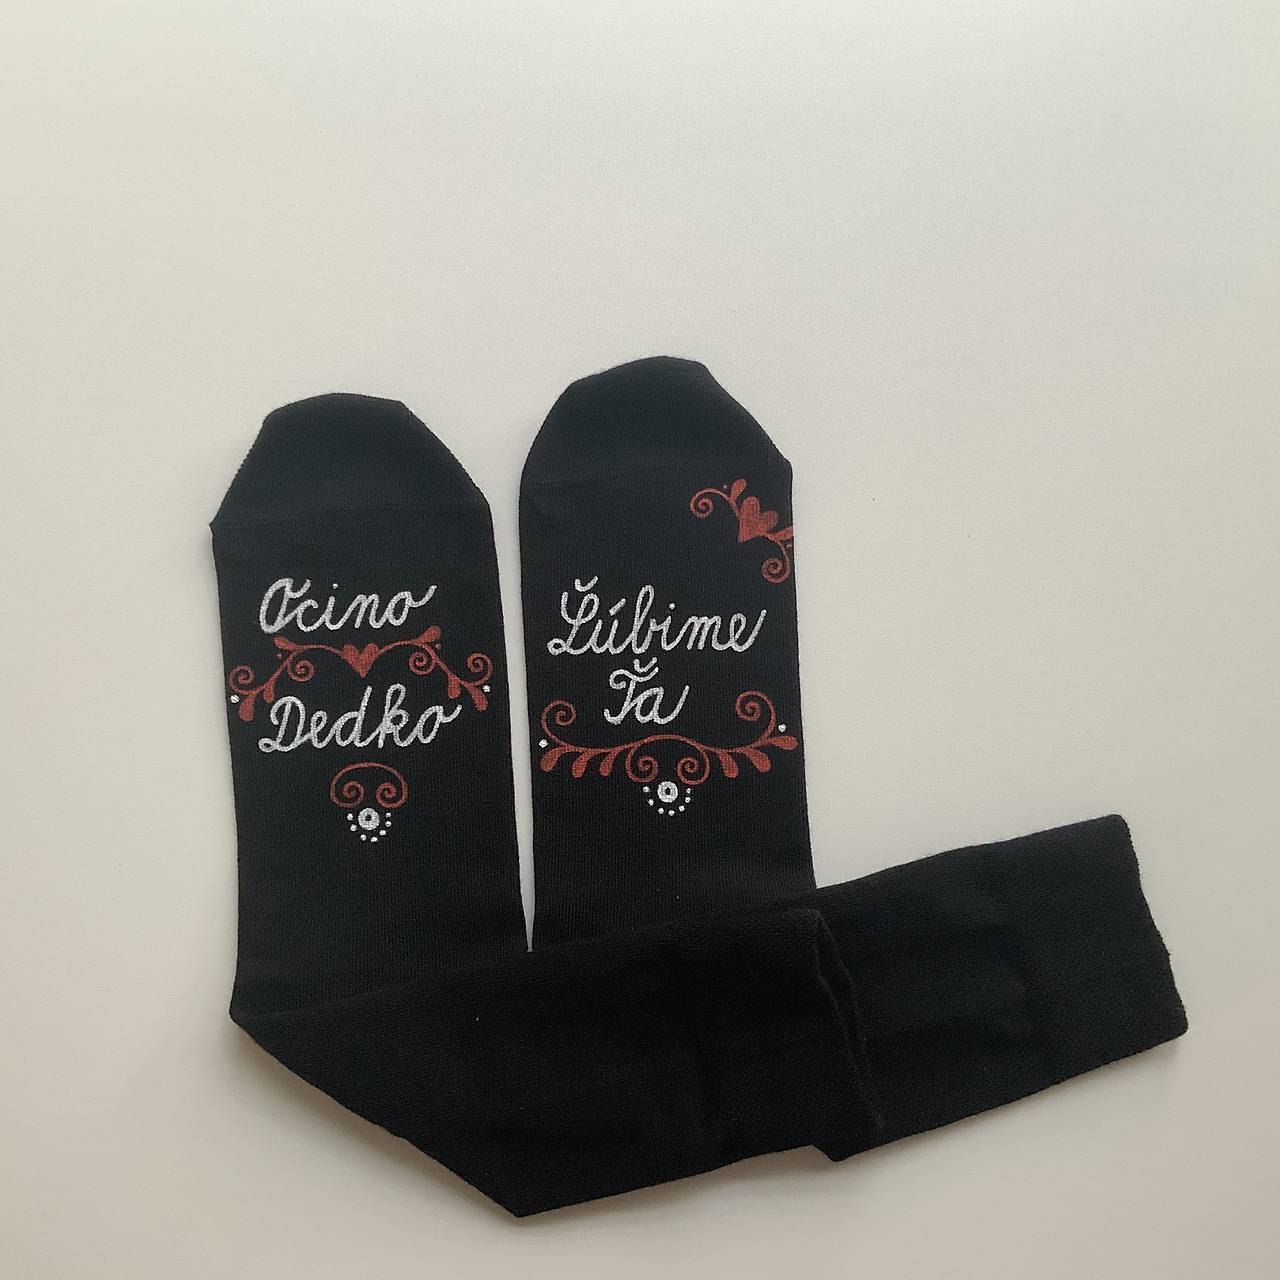 Maľované čierne ponožky s nápisom : "Ocino Dedko/ Ľúbime Ťa”